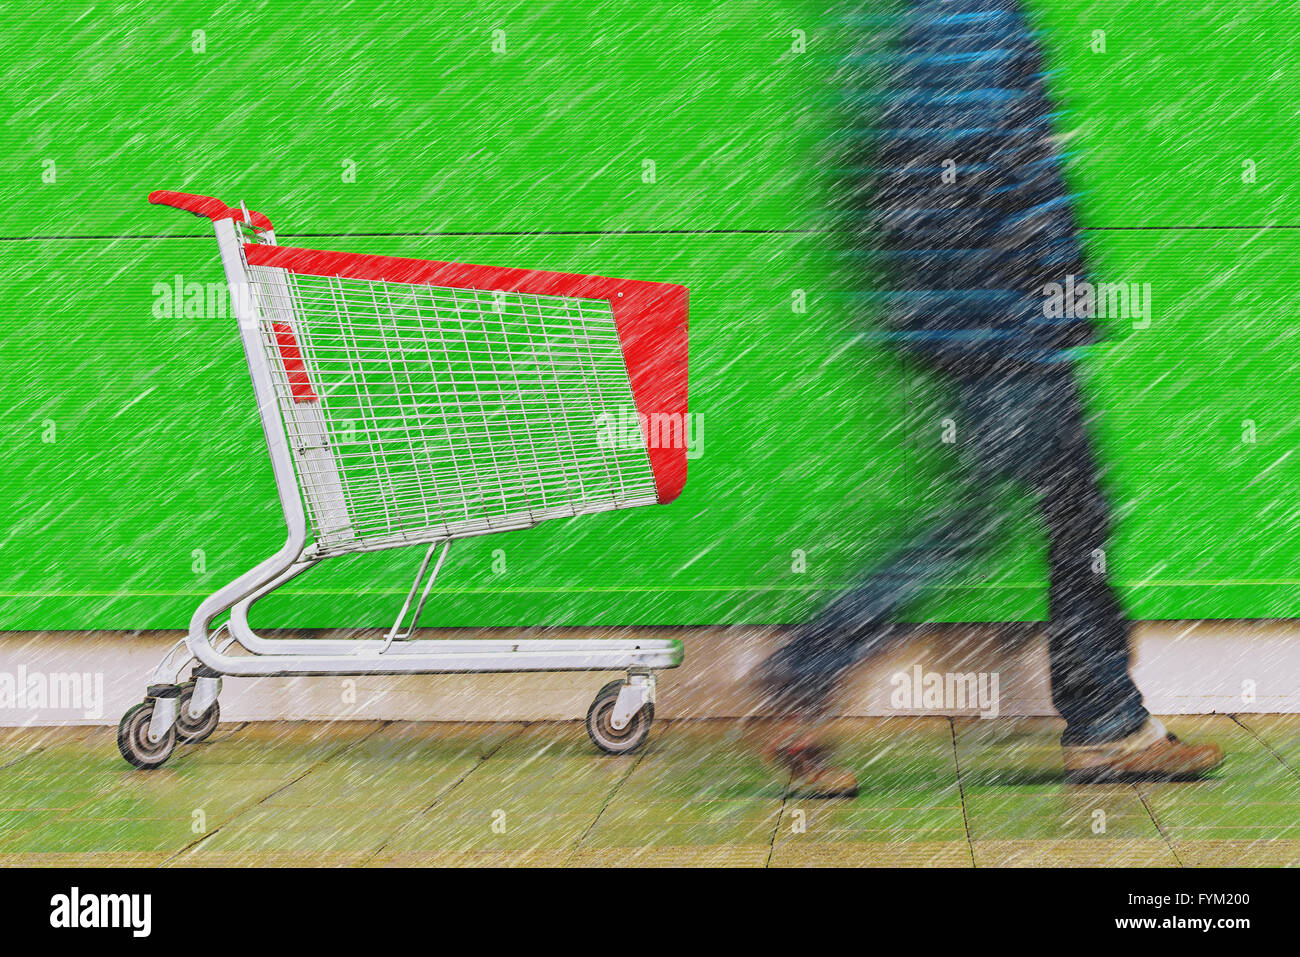 Compras en un día lluvioso, el desenfoque de movimiento hombre caminando por carro vacío delante de un carrito de supermercado. Foto de stock